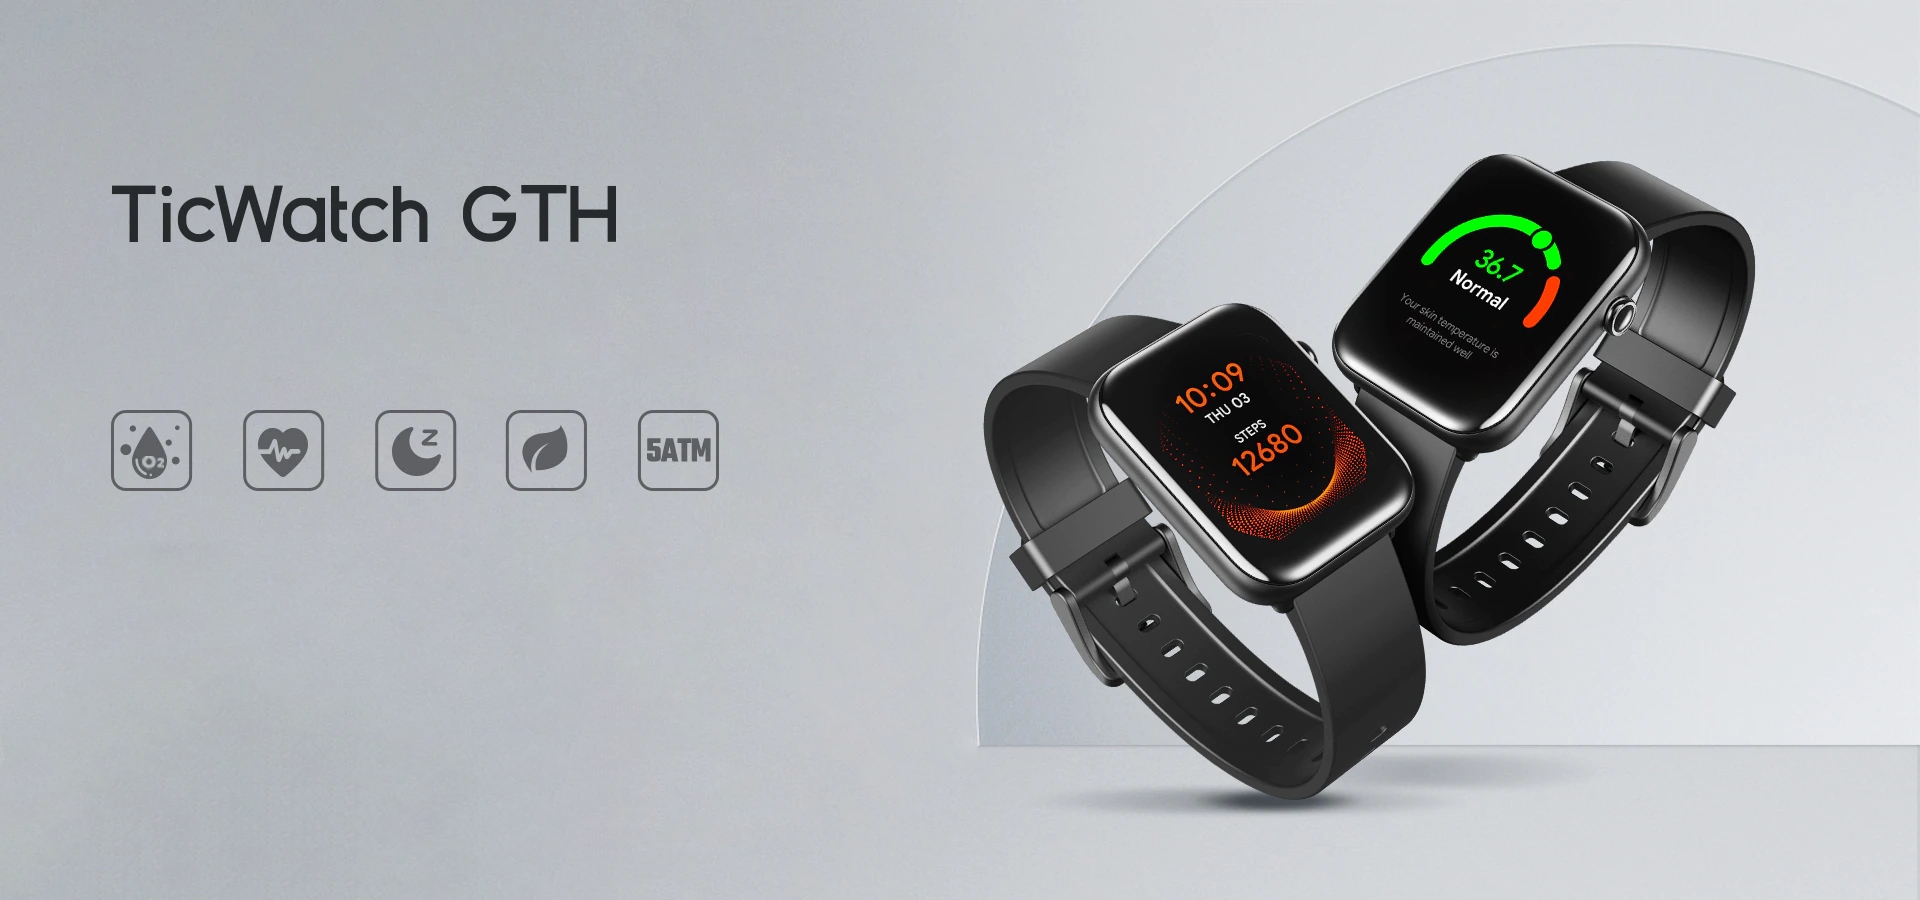 TicWatch GTH inteligentny zegarek z czujnikiem temperatury na sprzedaż na AliExpress za 69 dolarów